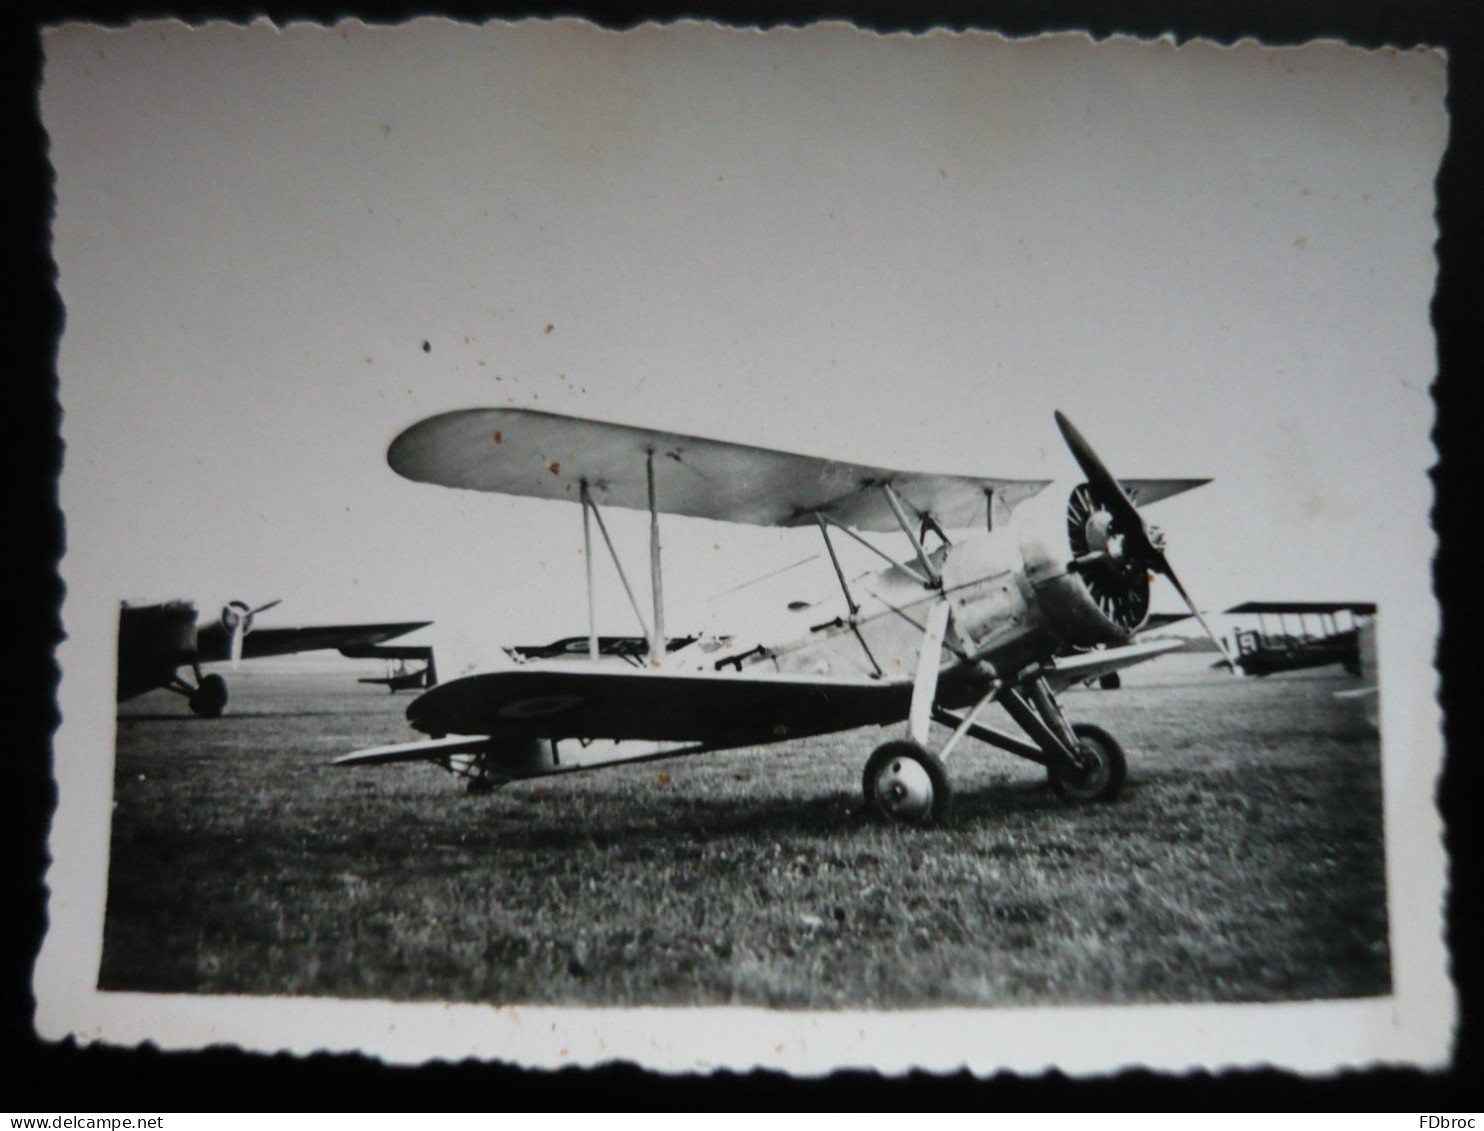 Ancienne Photo D'avion   ( Armée De L'Air -aviation Militaire ??  )  Petit Format 8,5 X 6 Cm - Luchtvaart